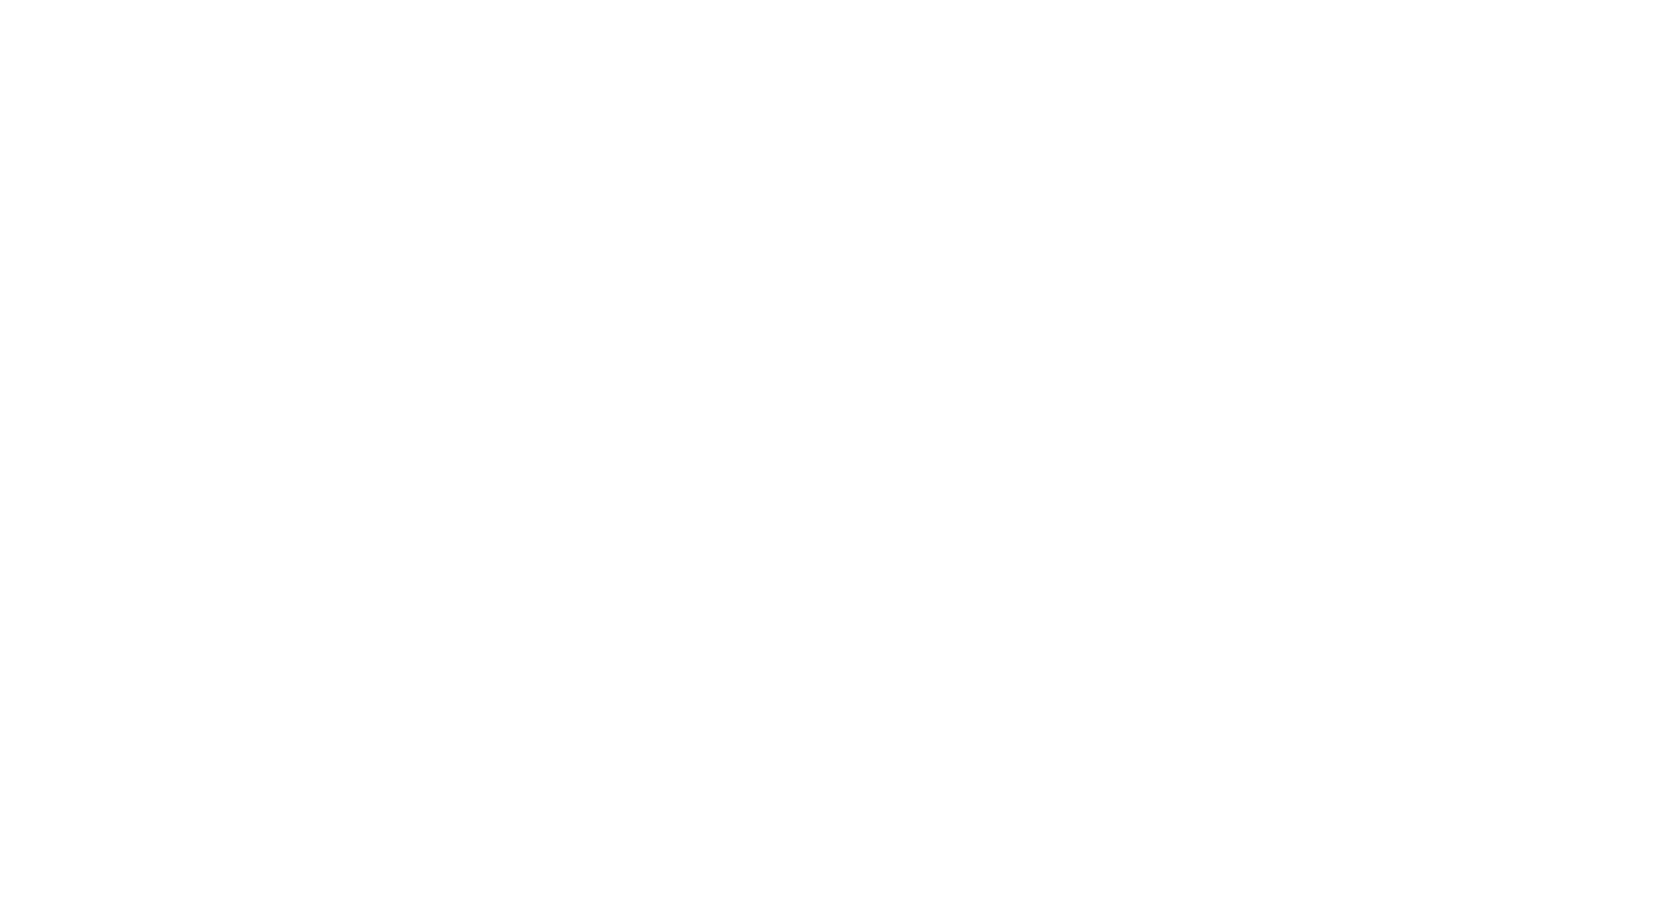 айдентика techmine, techmine, Nordic Lights, фирменный стиль для горнодобывающей компании, логотип промышленной компании, разработать фирменный стиль горно-рудной компании, логотип дистрибьютора запасных частей, Tecmine Казахстан логотип и фирменный стиль, фирменный стиль спецтехника